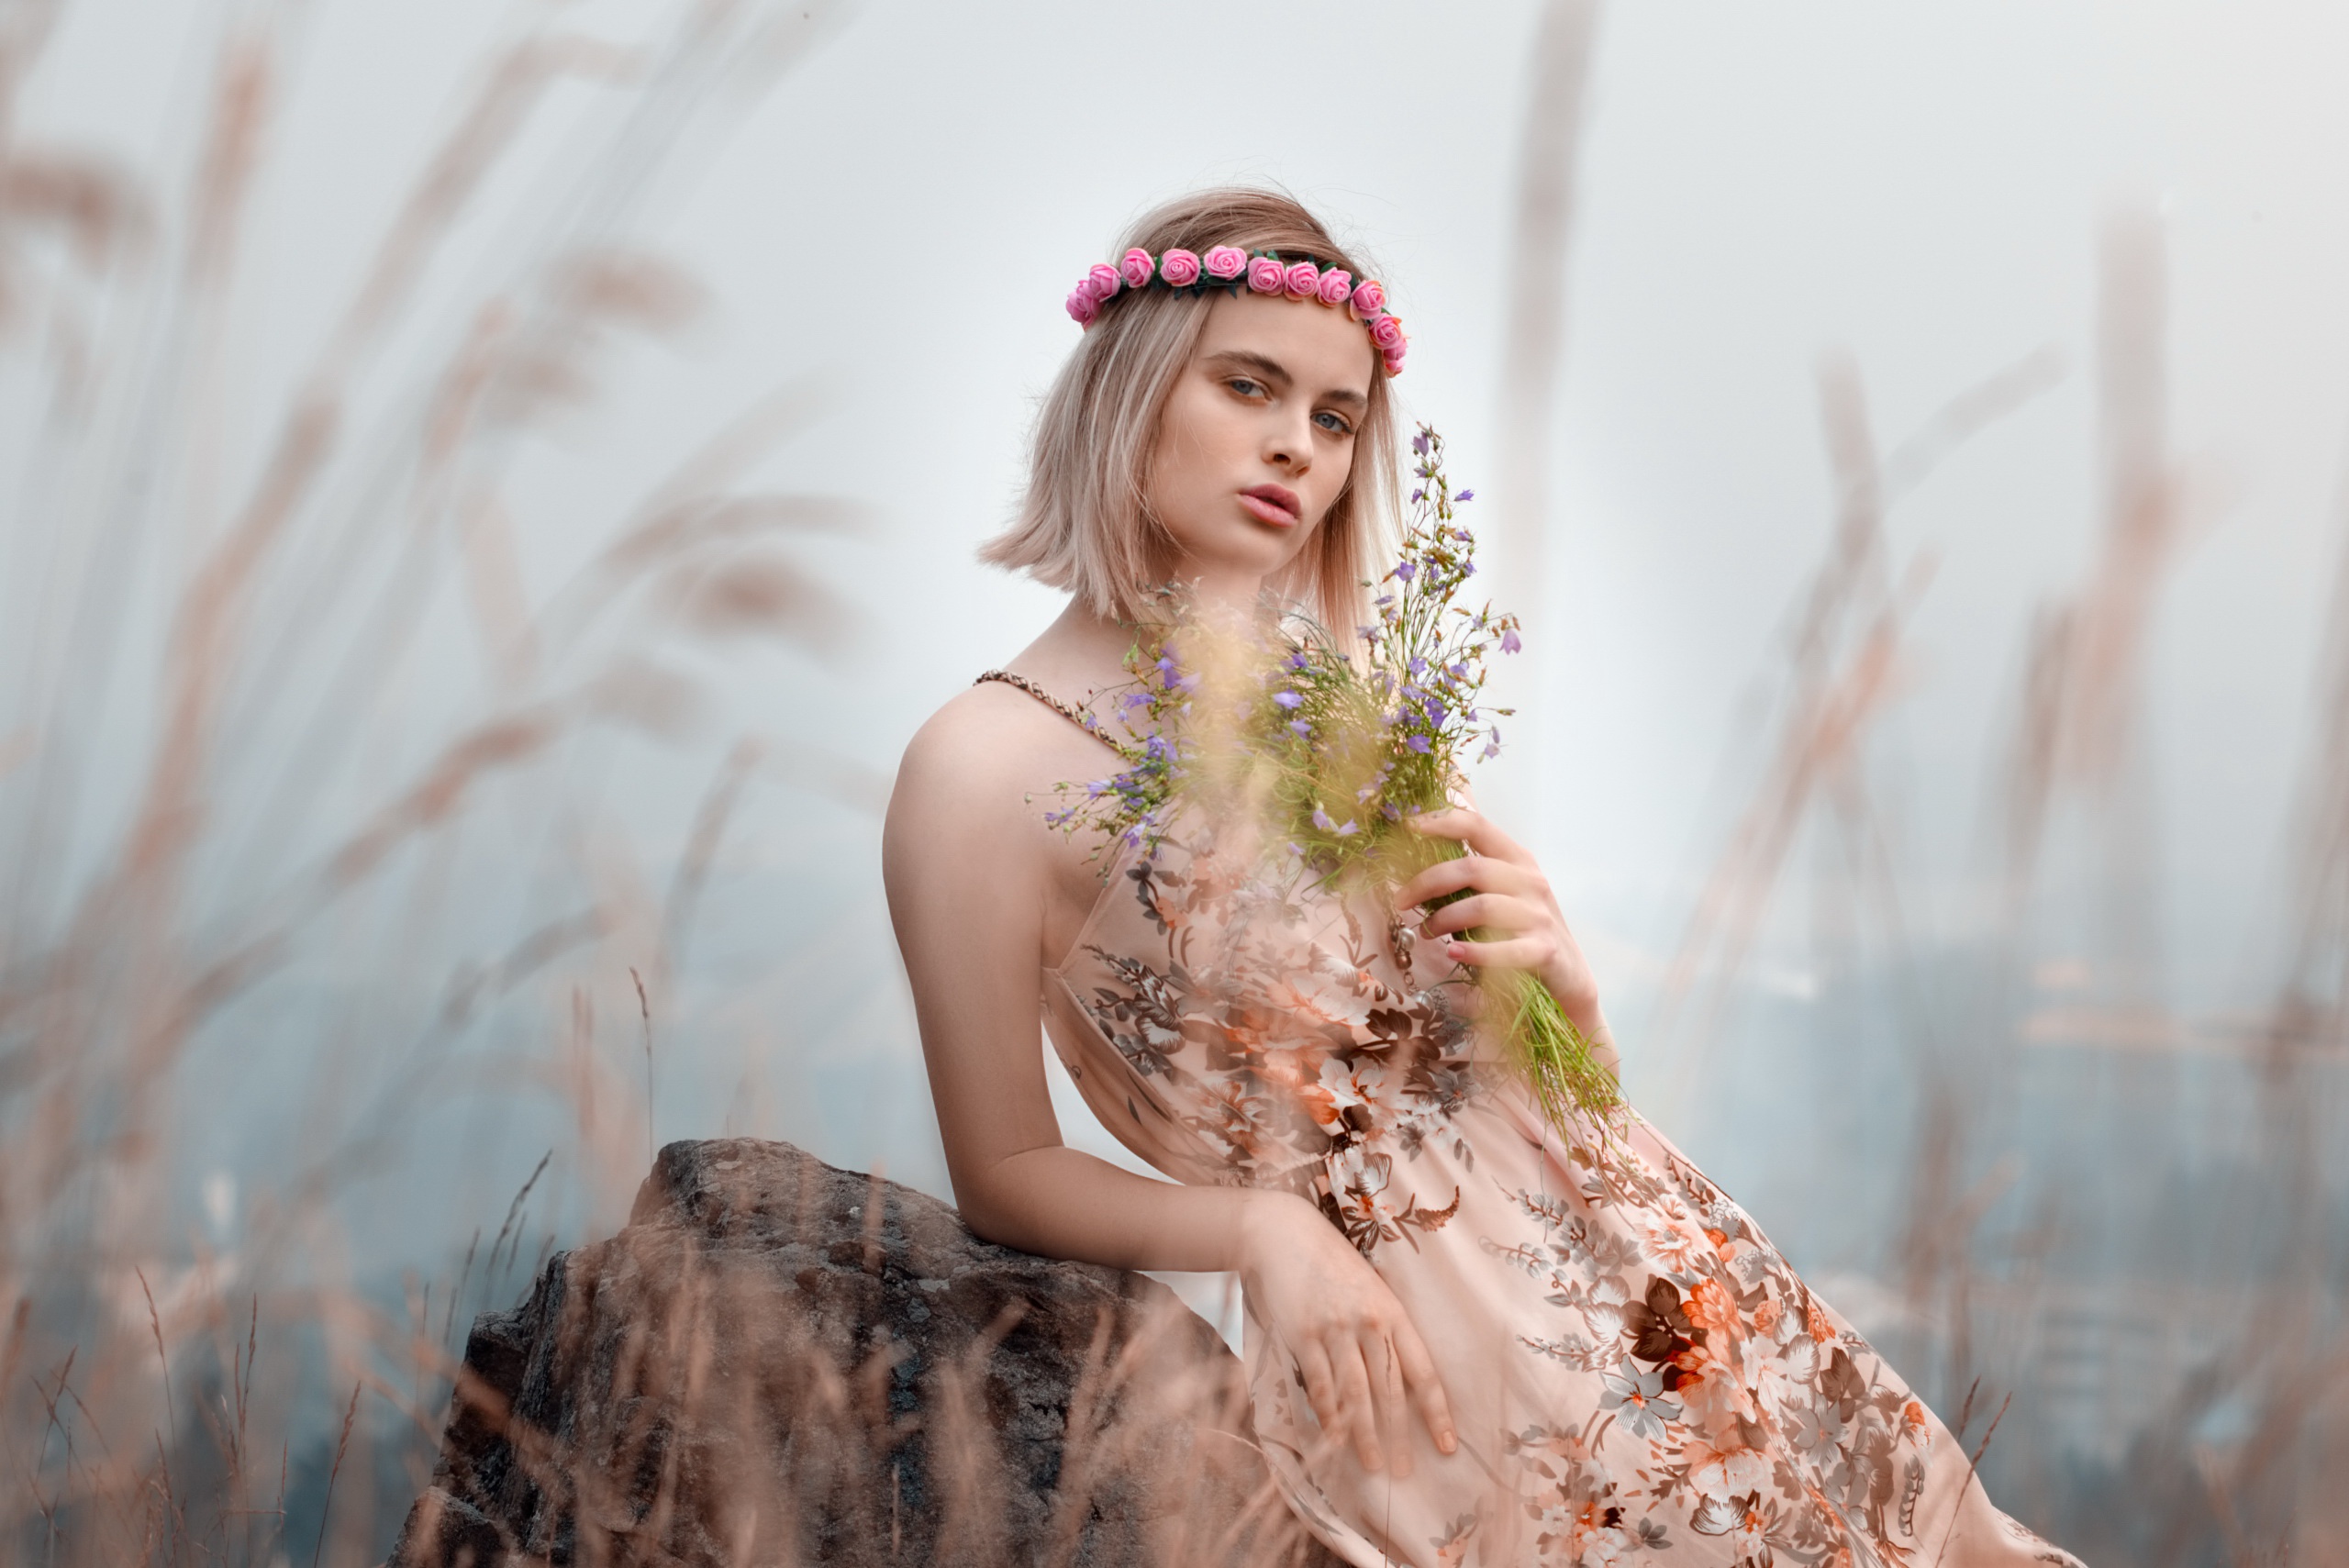 Women Model Plants Women Outdoors Dress Blonde Looking At Viewer Flower Crown Summer Dress 2560x1709